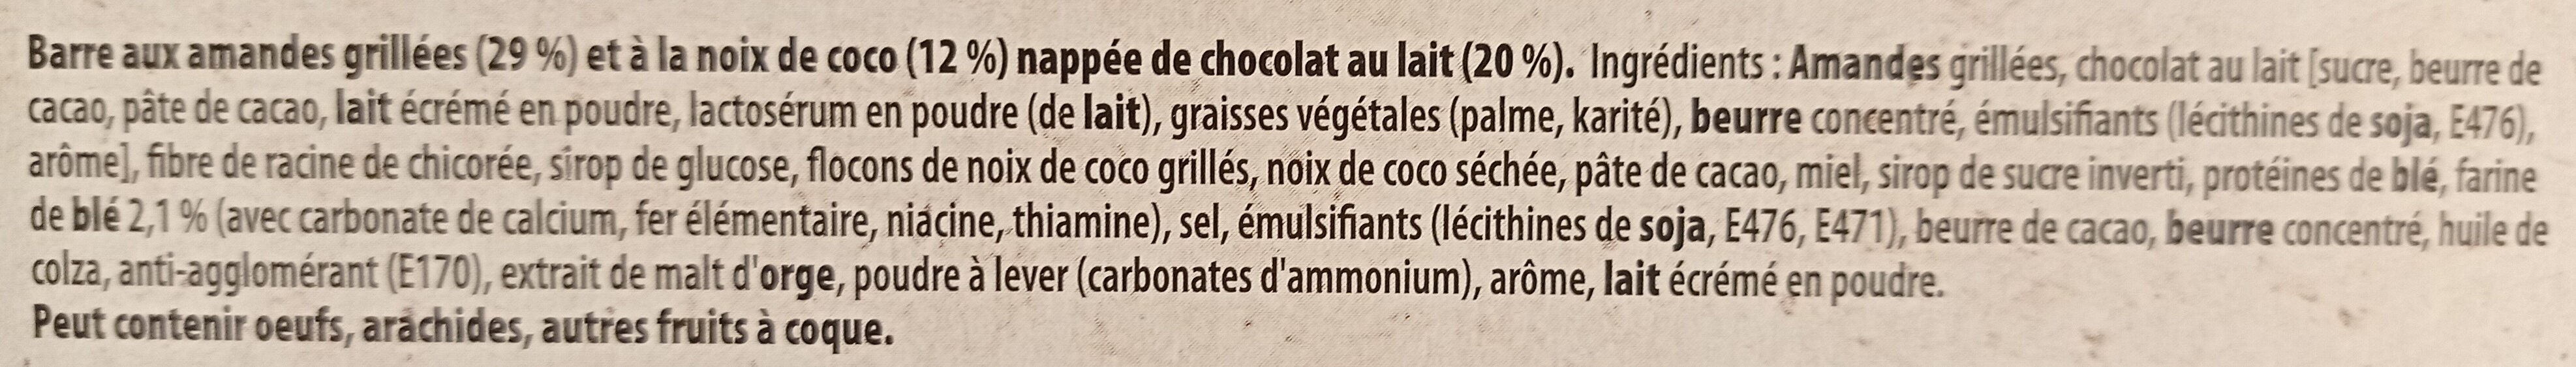 Envie de nuts - Ingredients - fr